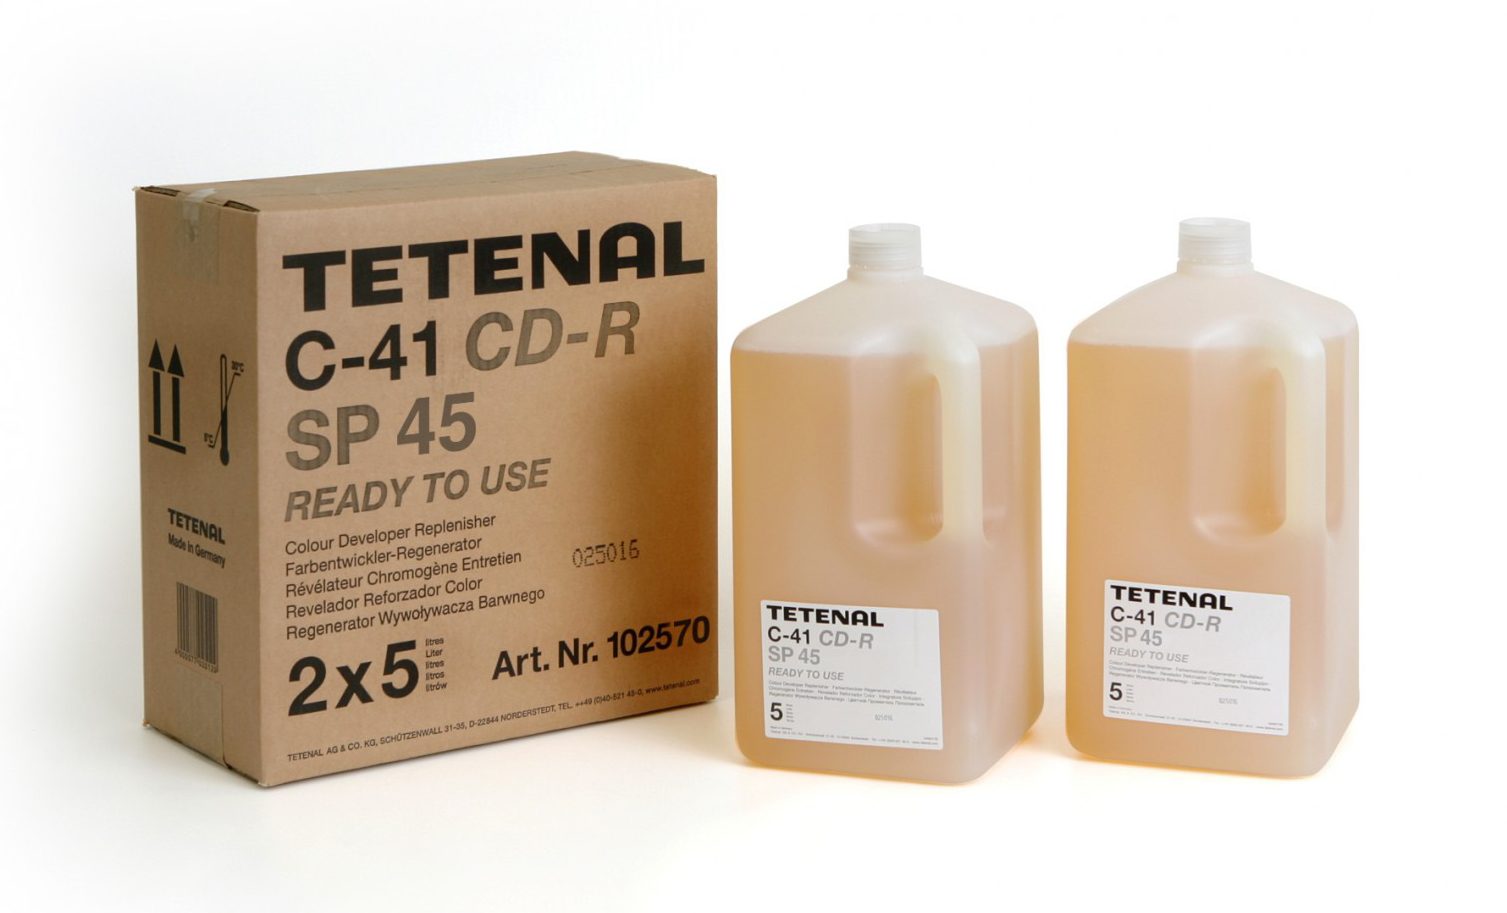 Tetenal C-41 Colour Developer Replenisher SP45 Low Rate (via http://www.tetenaluk.com)